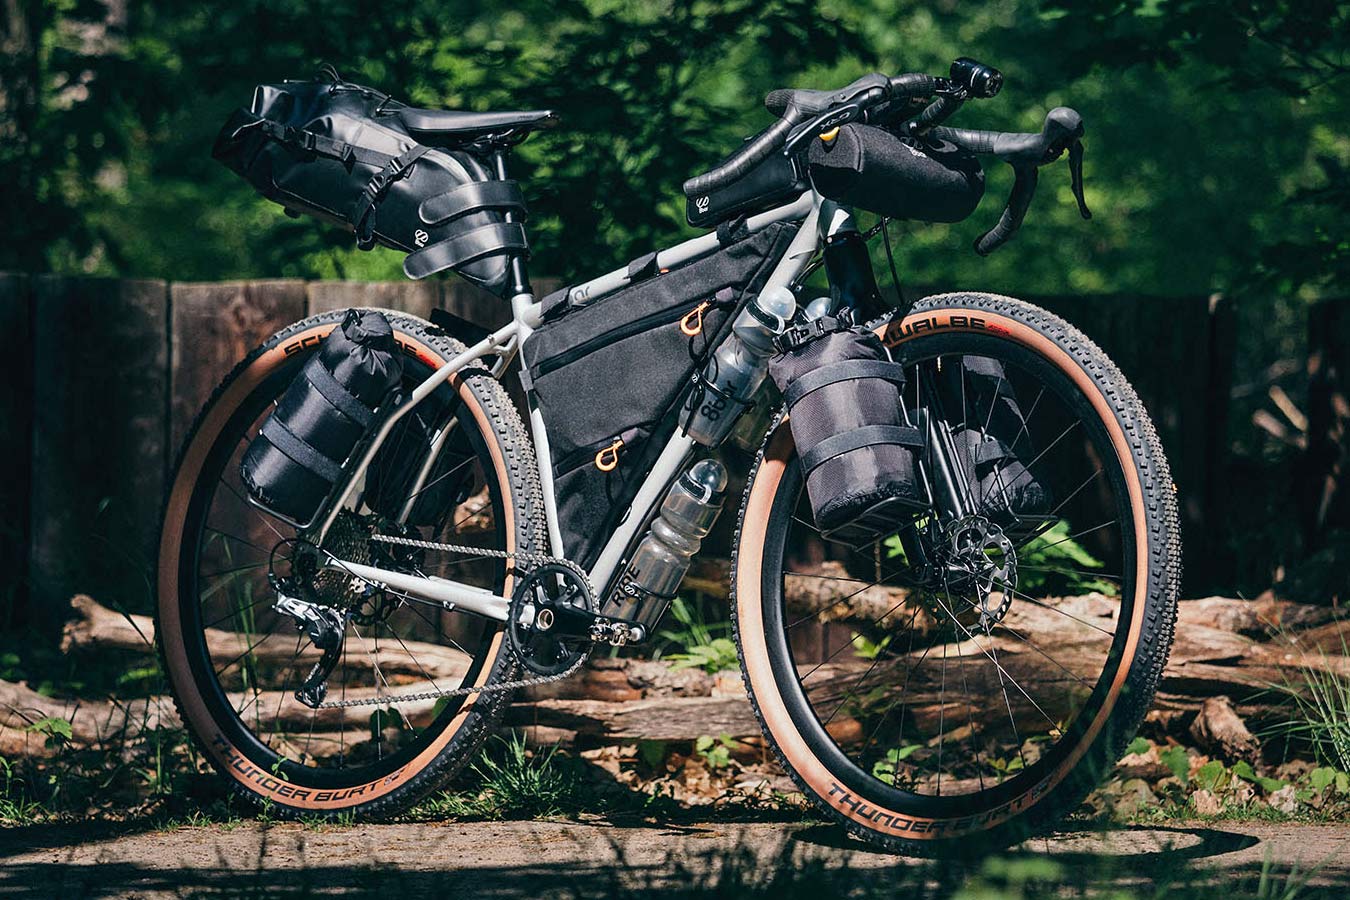 8bar Tflsberg steel off-road adventure bikepacking mountain bike, photo by Stefan Haehnel, loaded